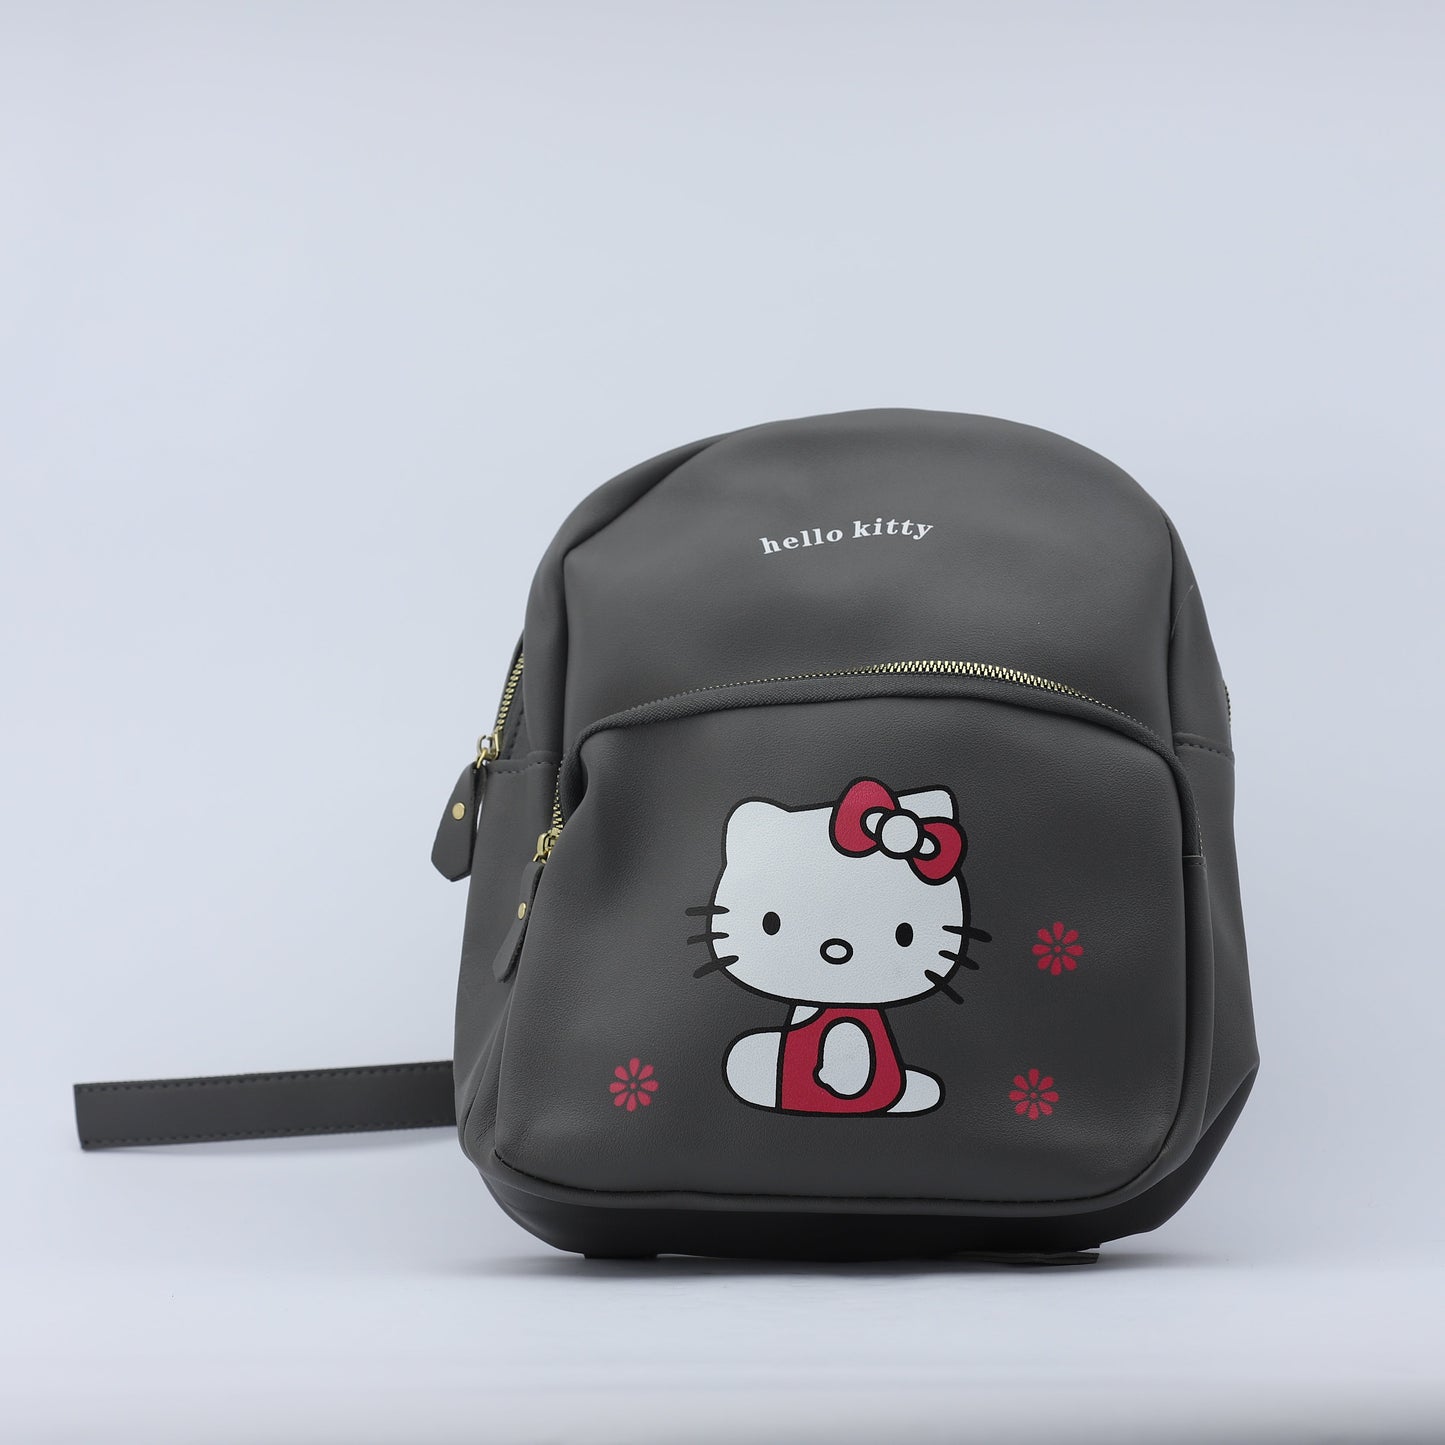 Smart Backpack Bag